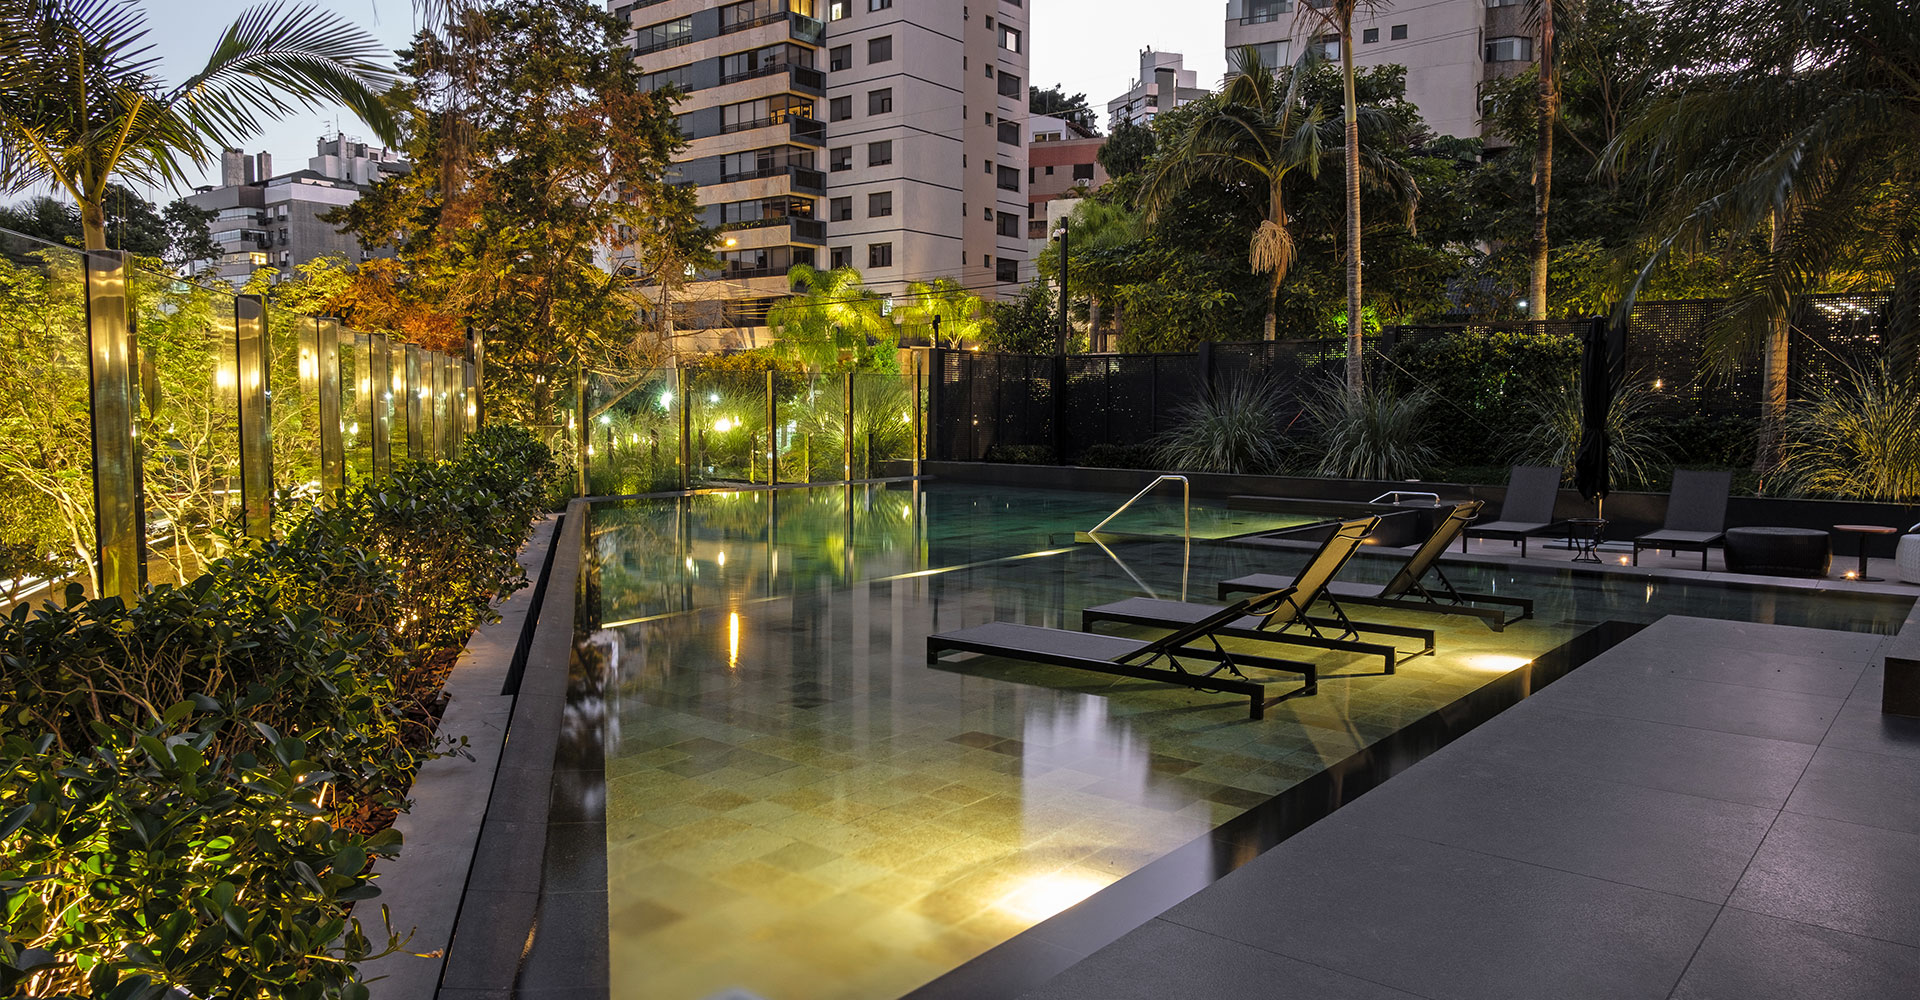 Residências com perfil de super moradia mantém tendência no mercado imobiliário de alto padrão em Porto Alegre